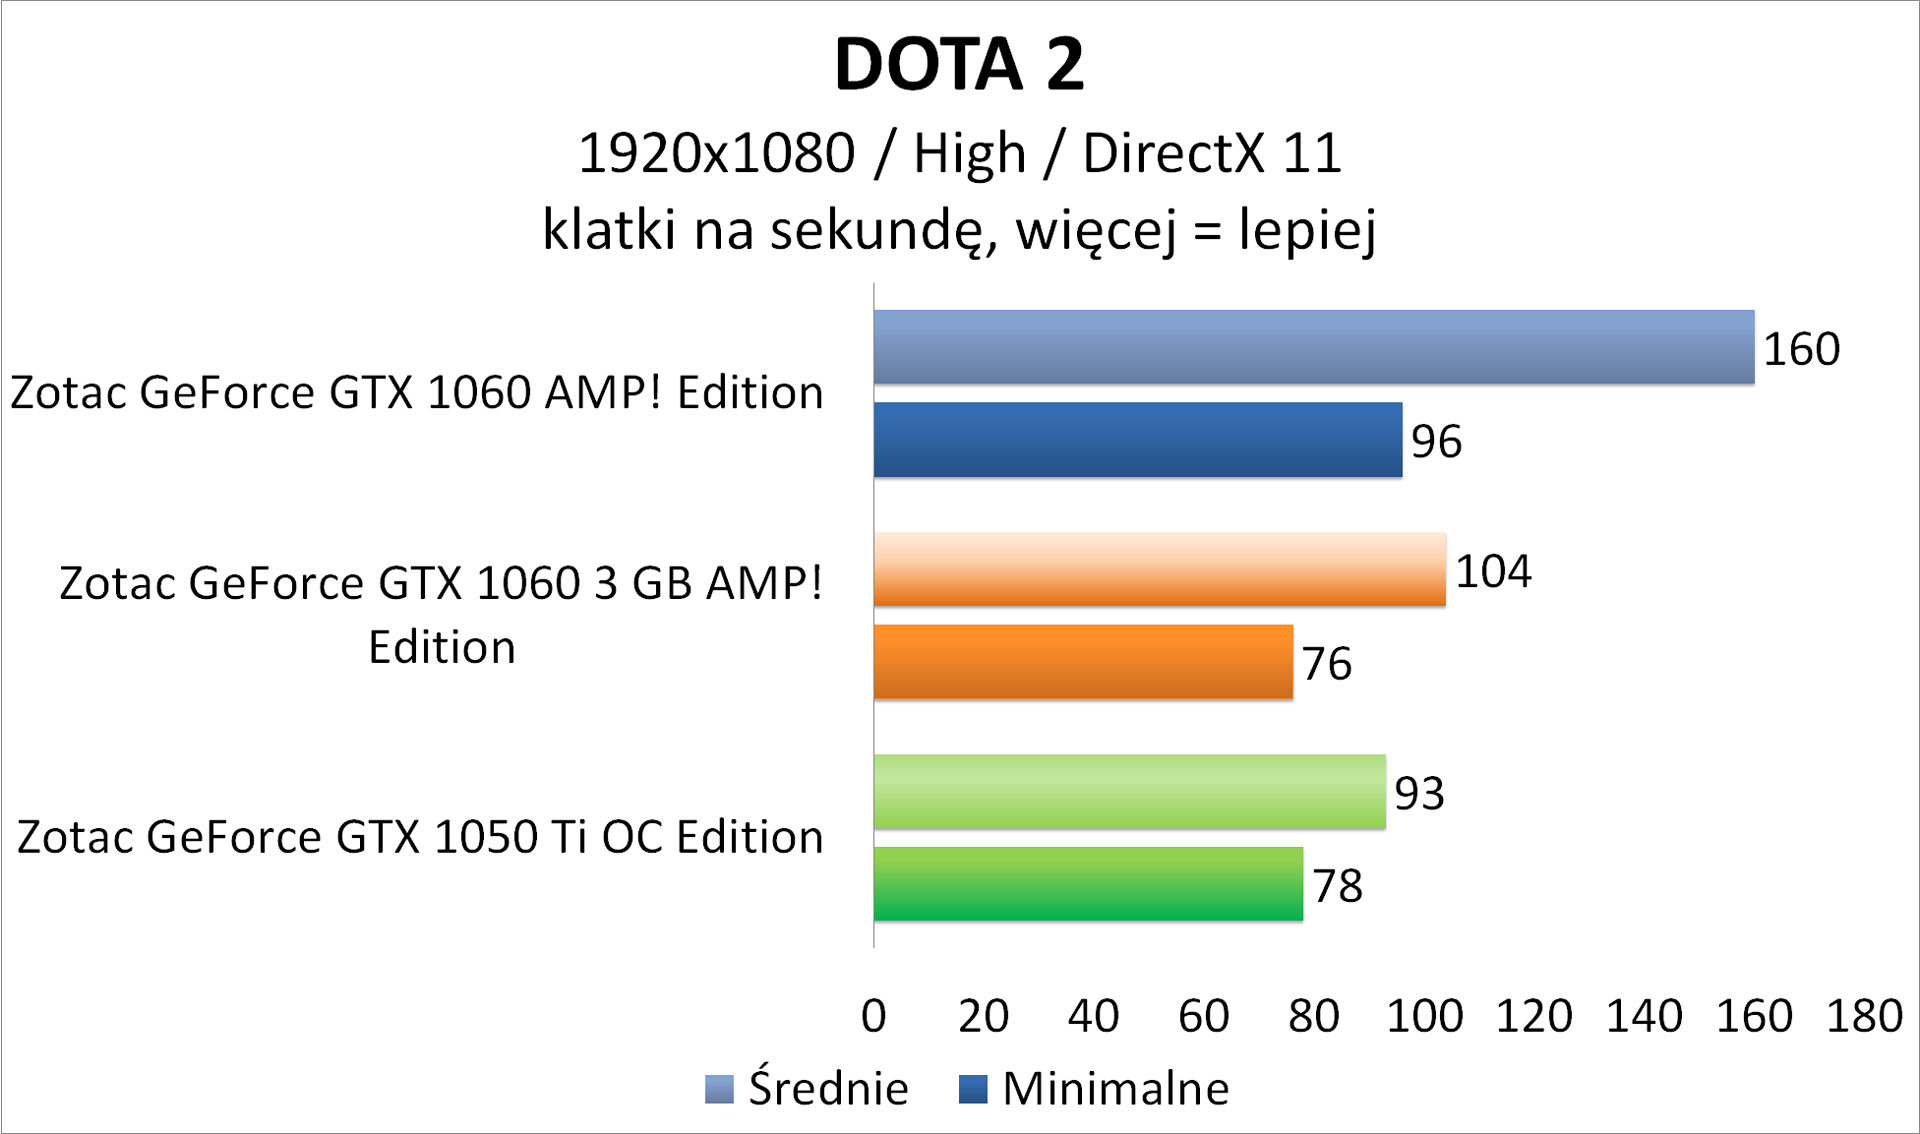 Zotac GeForce GTX 1050 Ti OC Edition - DOTA 2